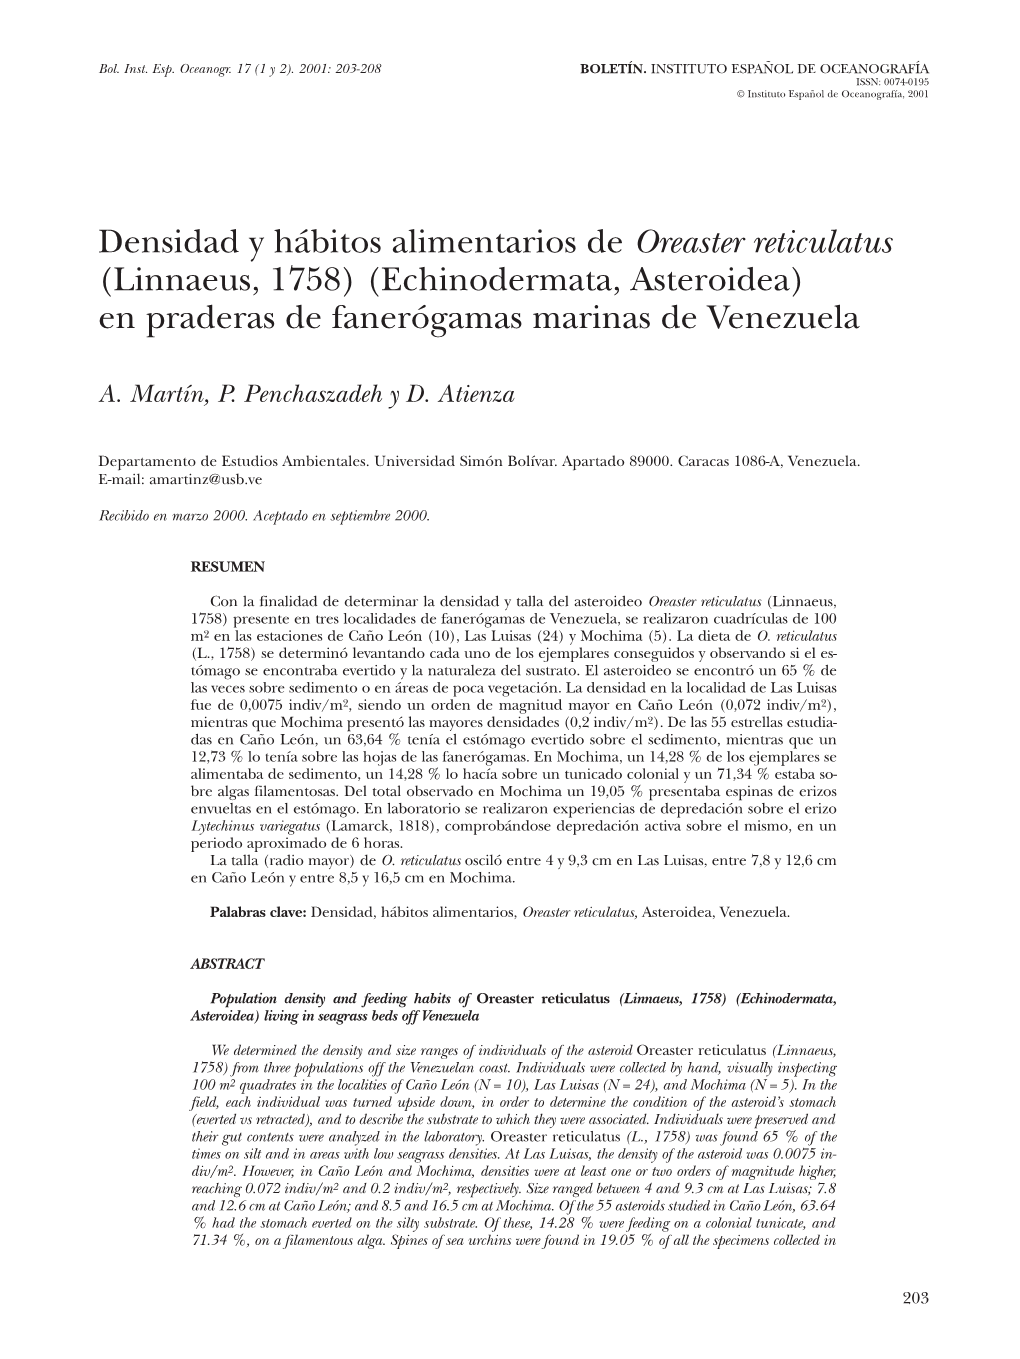 Densidad Y Hábitos Alimentarios De Oreaster Reticulatus (Linnaeus, 1758) (Echinodermata, Asteroidea) En Praderas De Fanerógamas Marinas De Venezuela